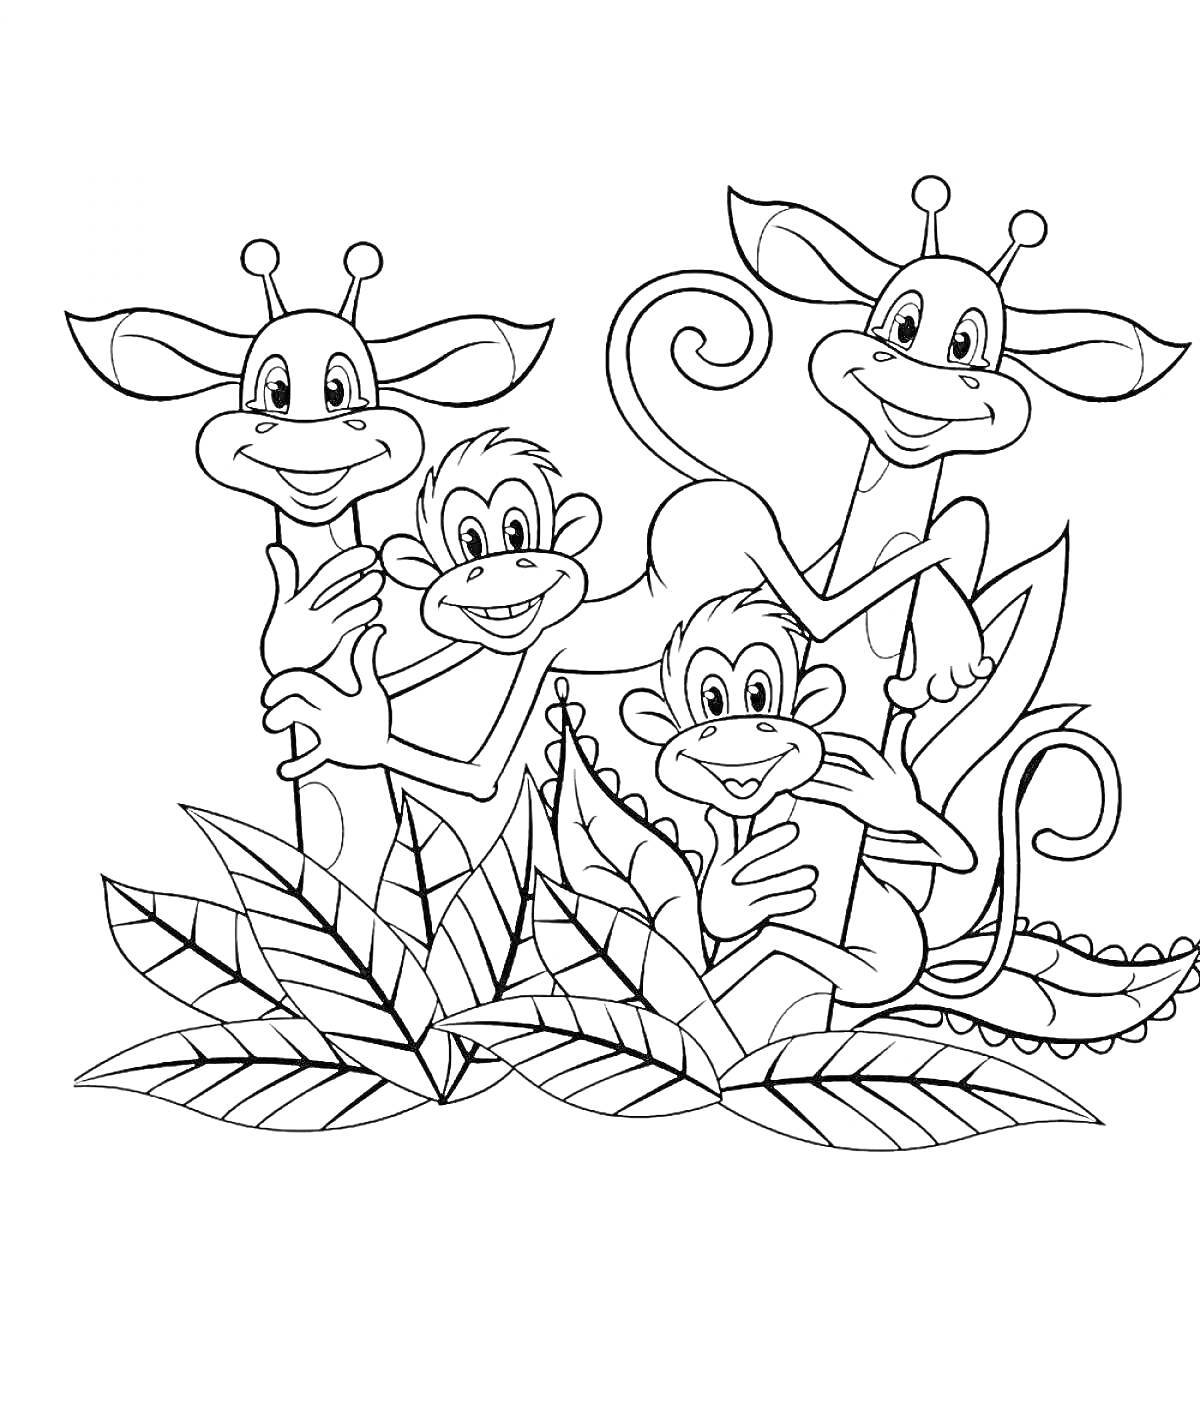 Раскраска Трое жирафов и две обезьянки за кустами с большими листьями